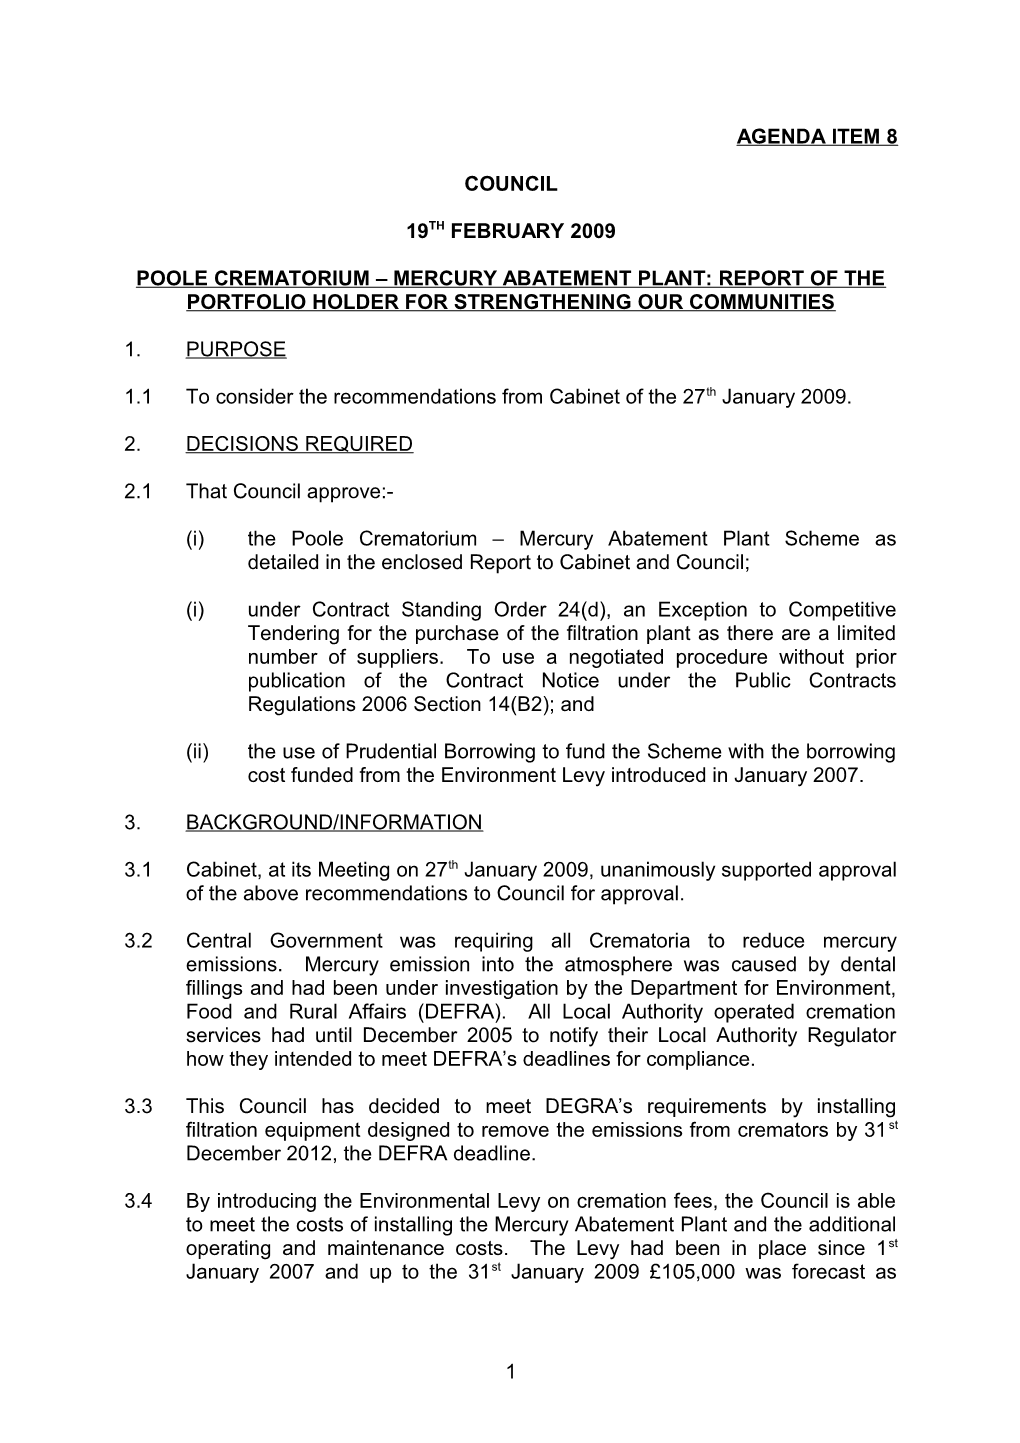 Poole Crematorium Mercury Abatement Plant: Report of the Portfolio Holder for Strengthening